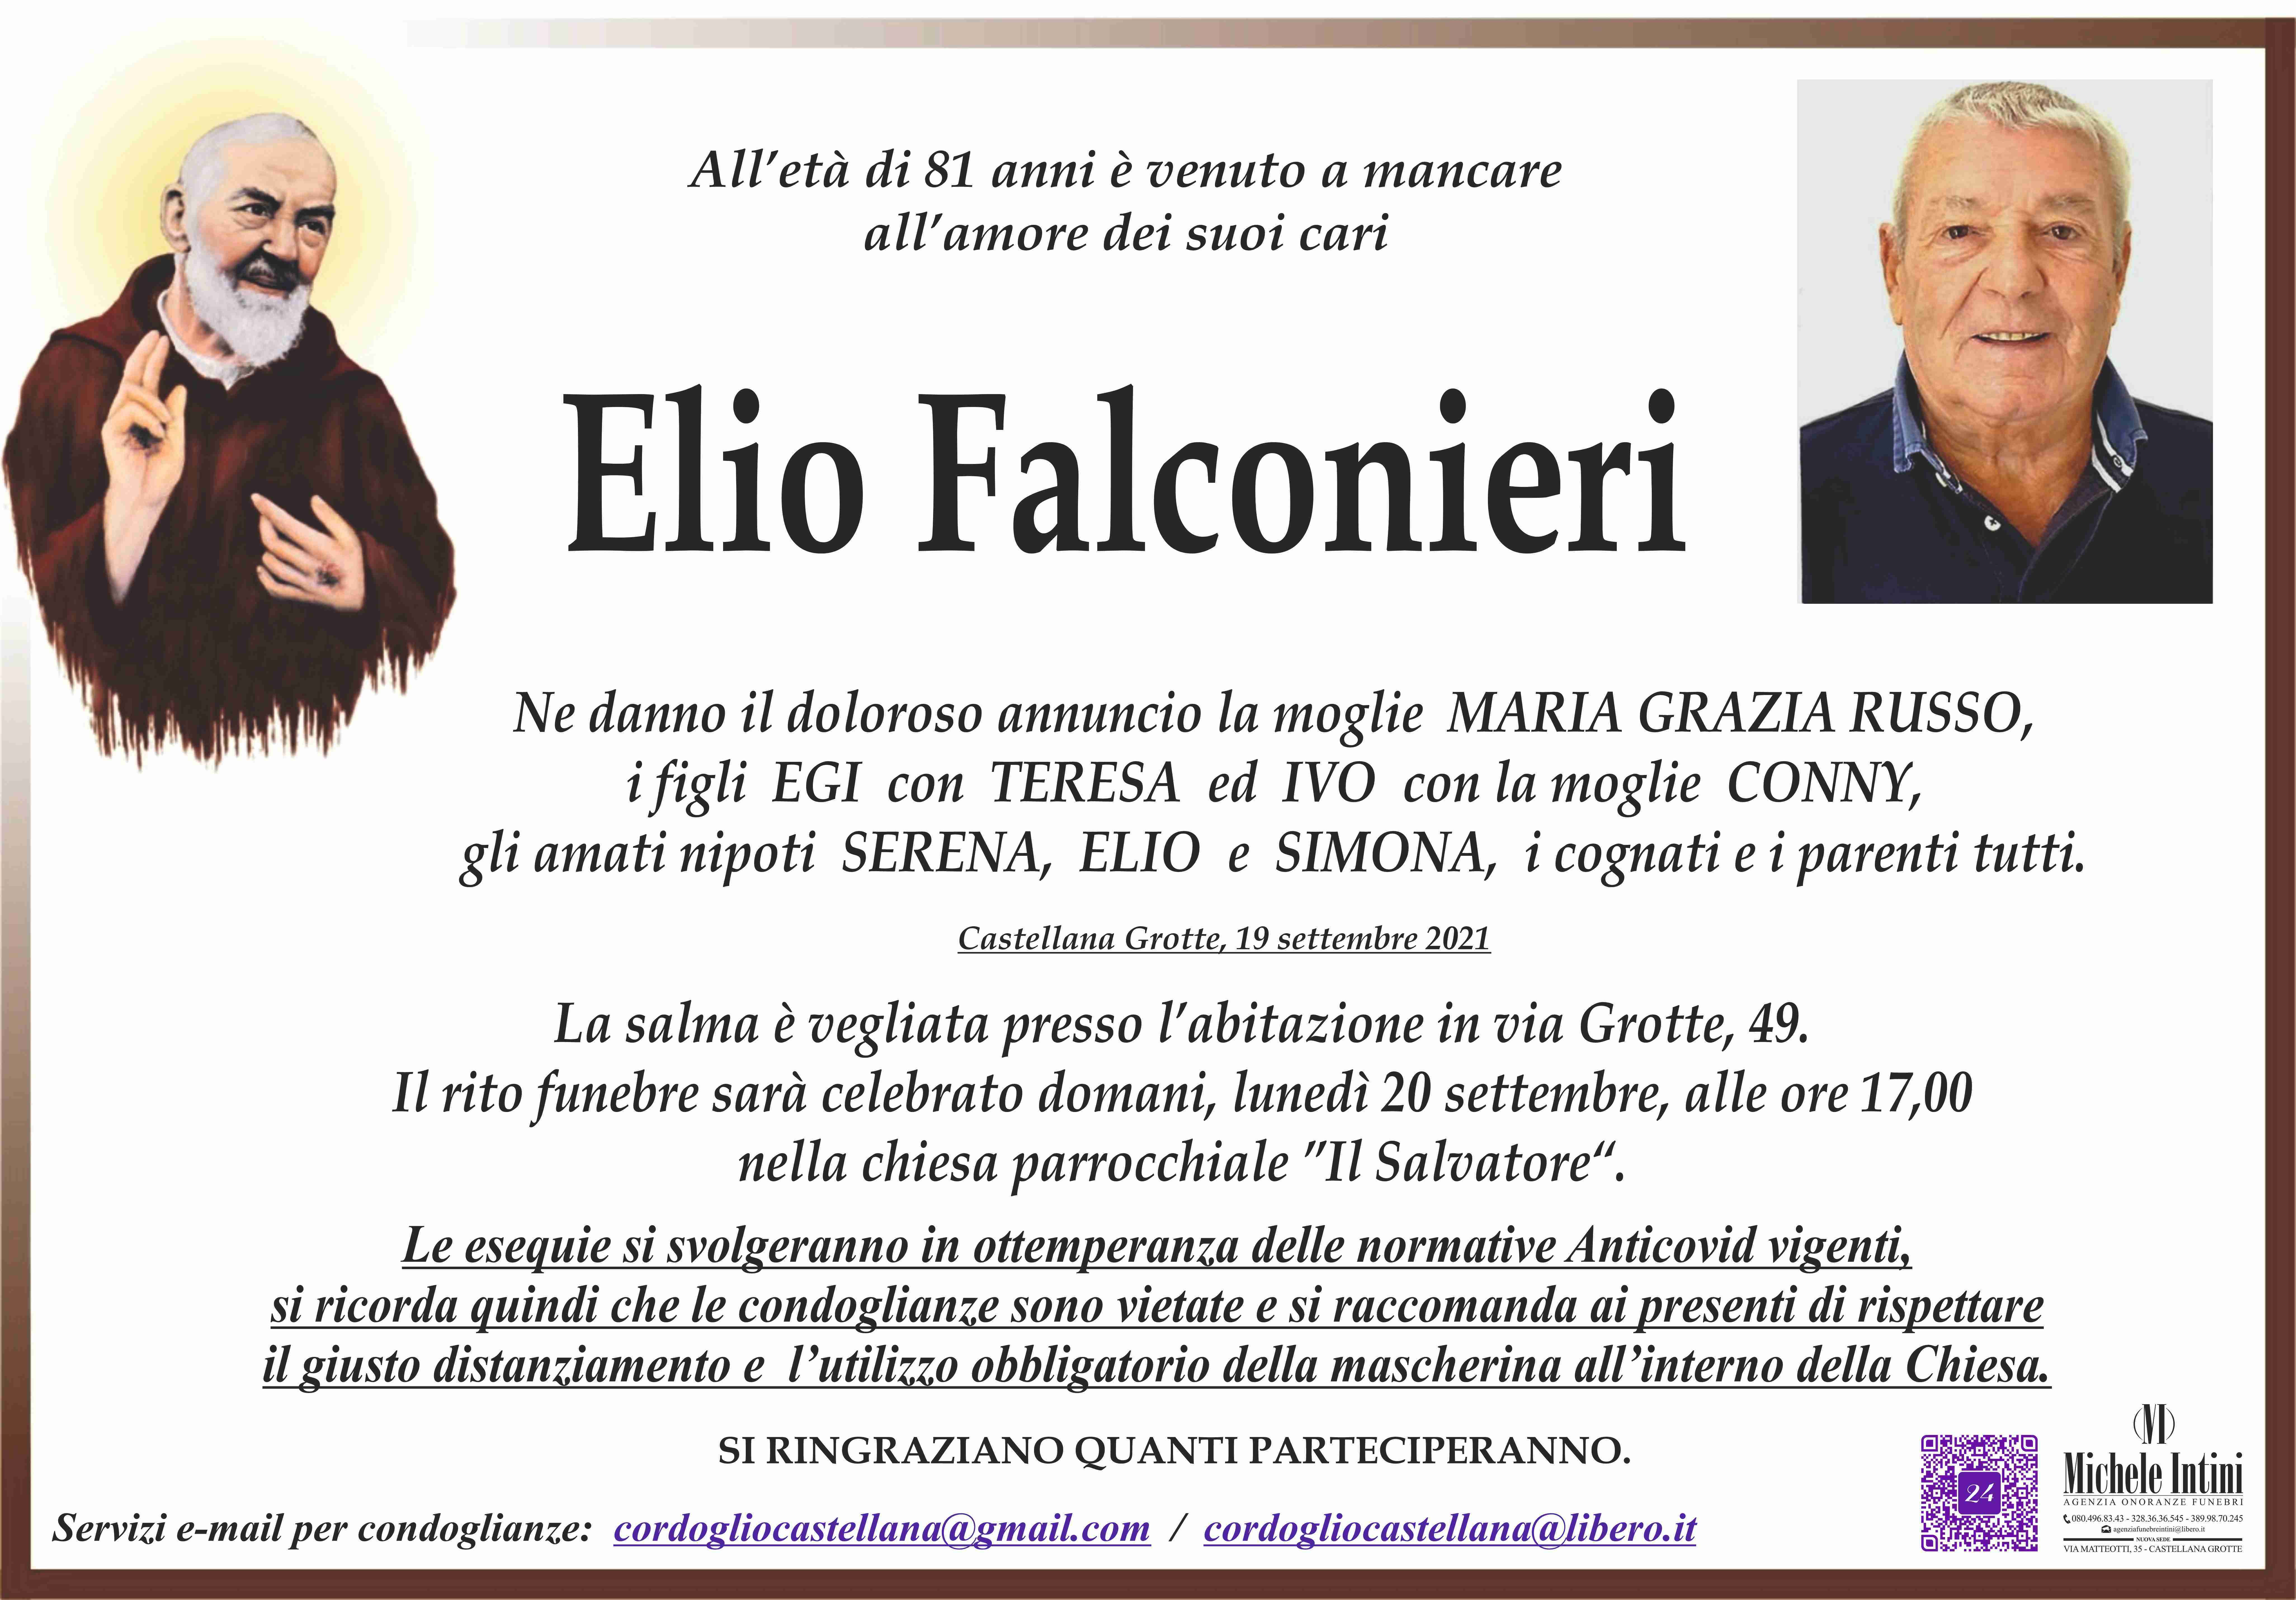 Elio Falconieri